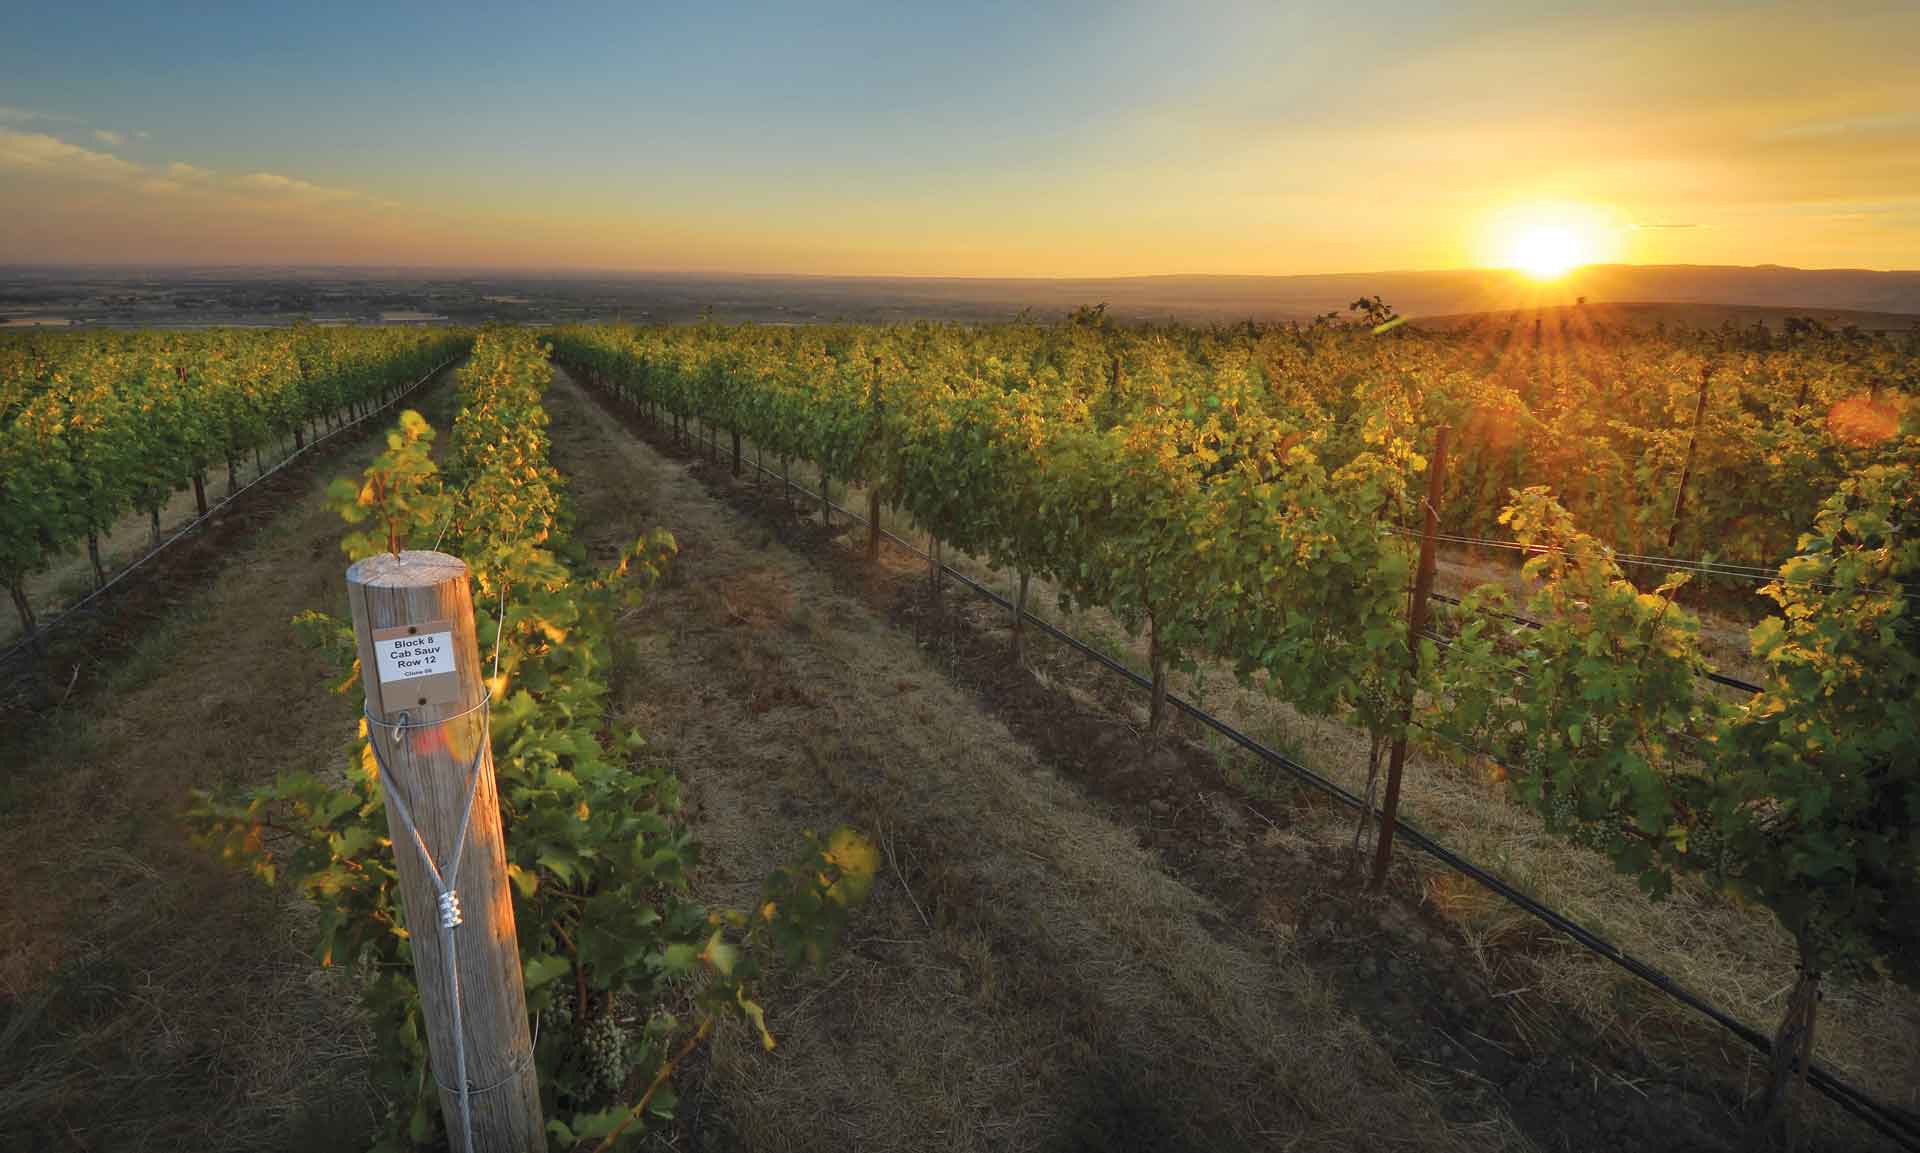 A Walla Walla vineyard at sunset